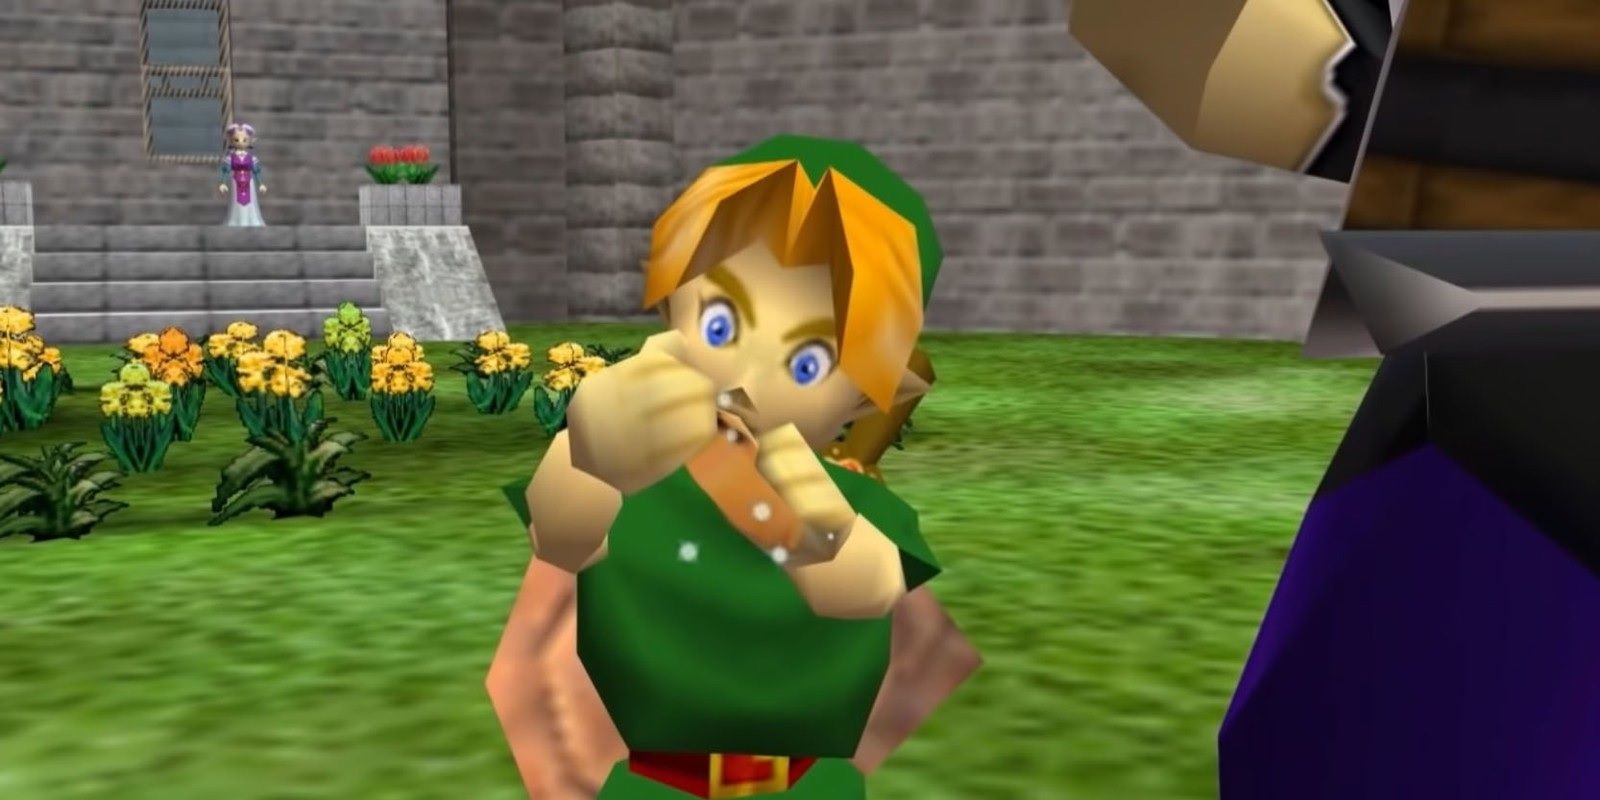 Legend of Zelda Ocarina of Time - N64 Game